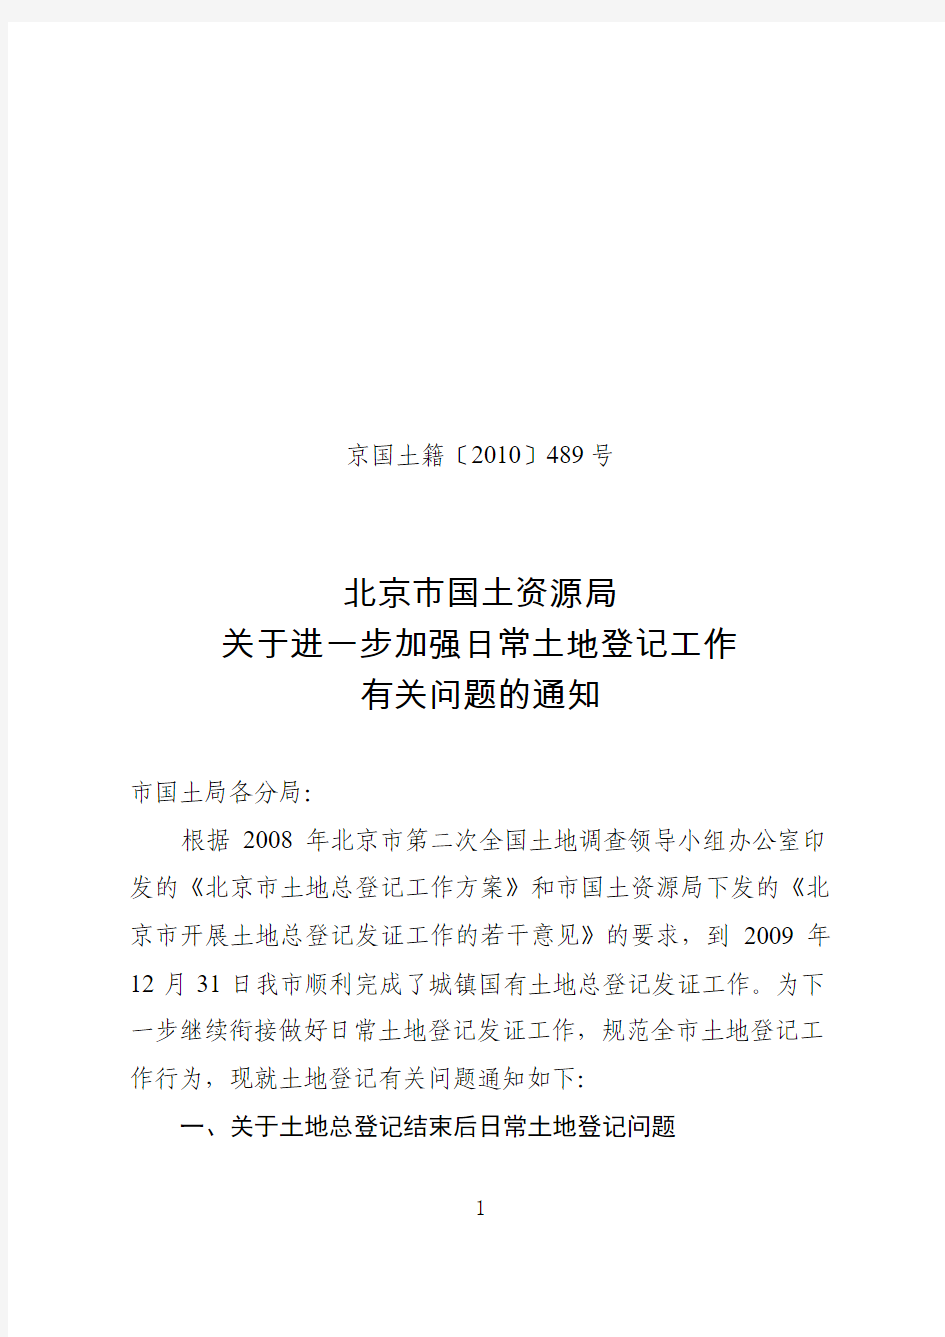 北京市国土资源局关于进一步加强日常土地登记工作有关问题的通知